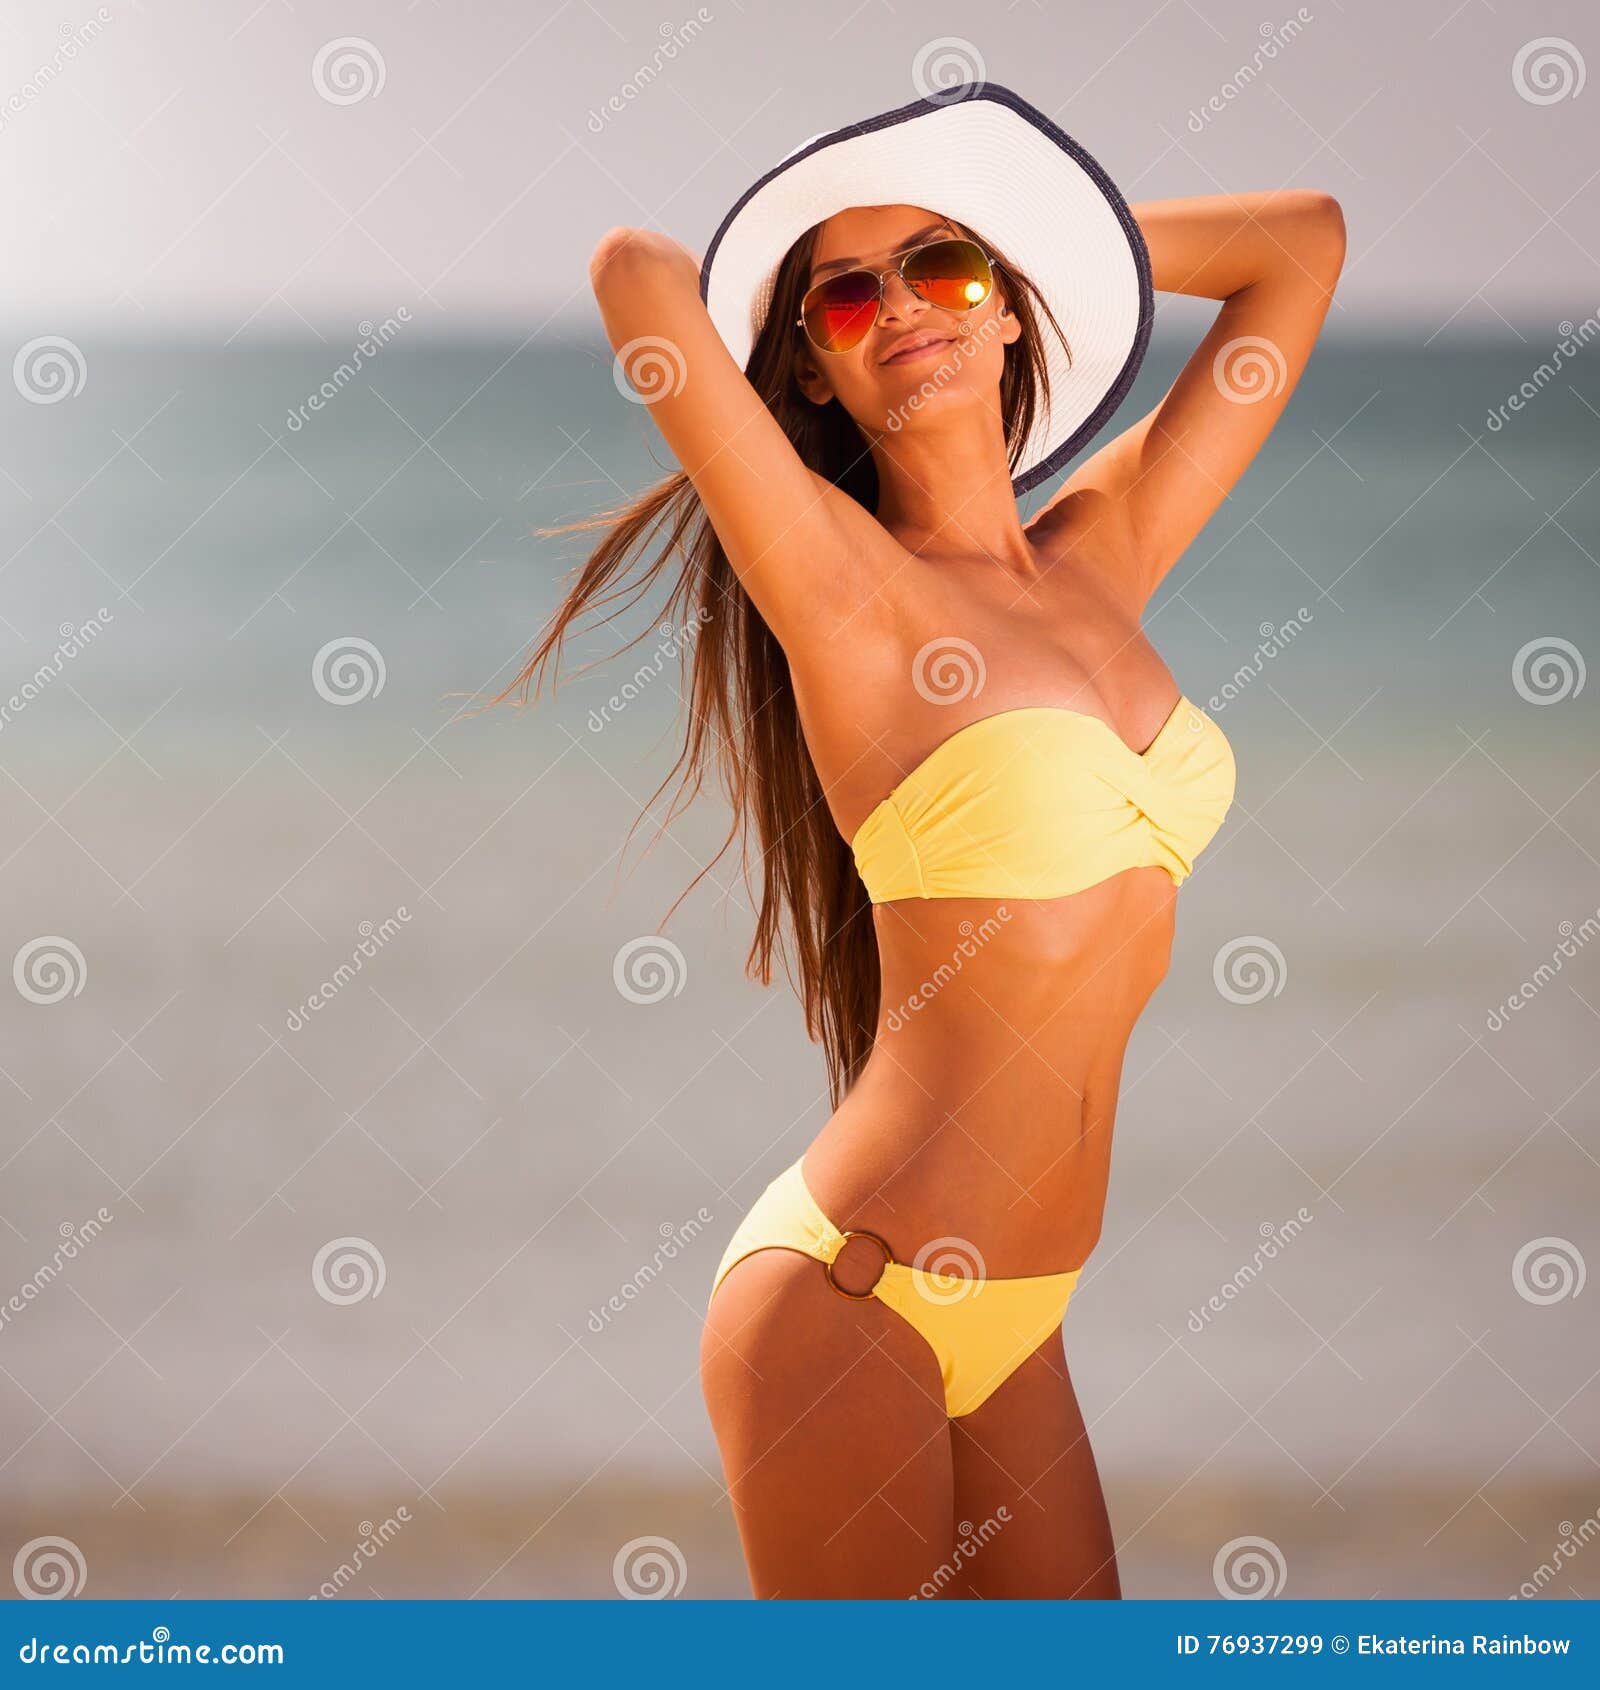 Angel Yellow Bikini Sea Instagram Stock Image Image Of Bali